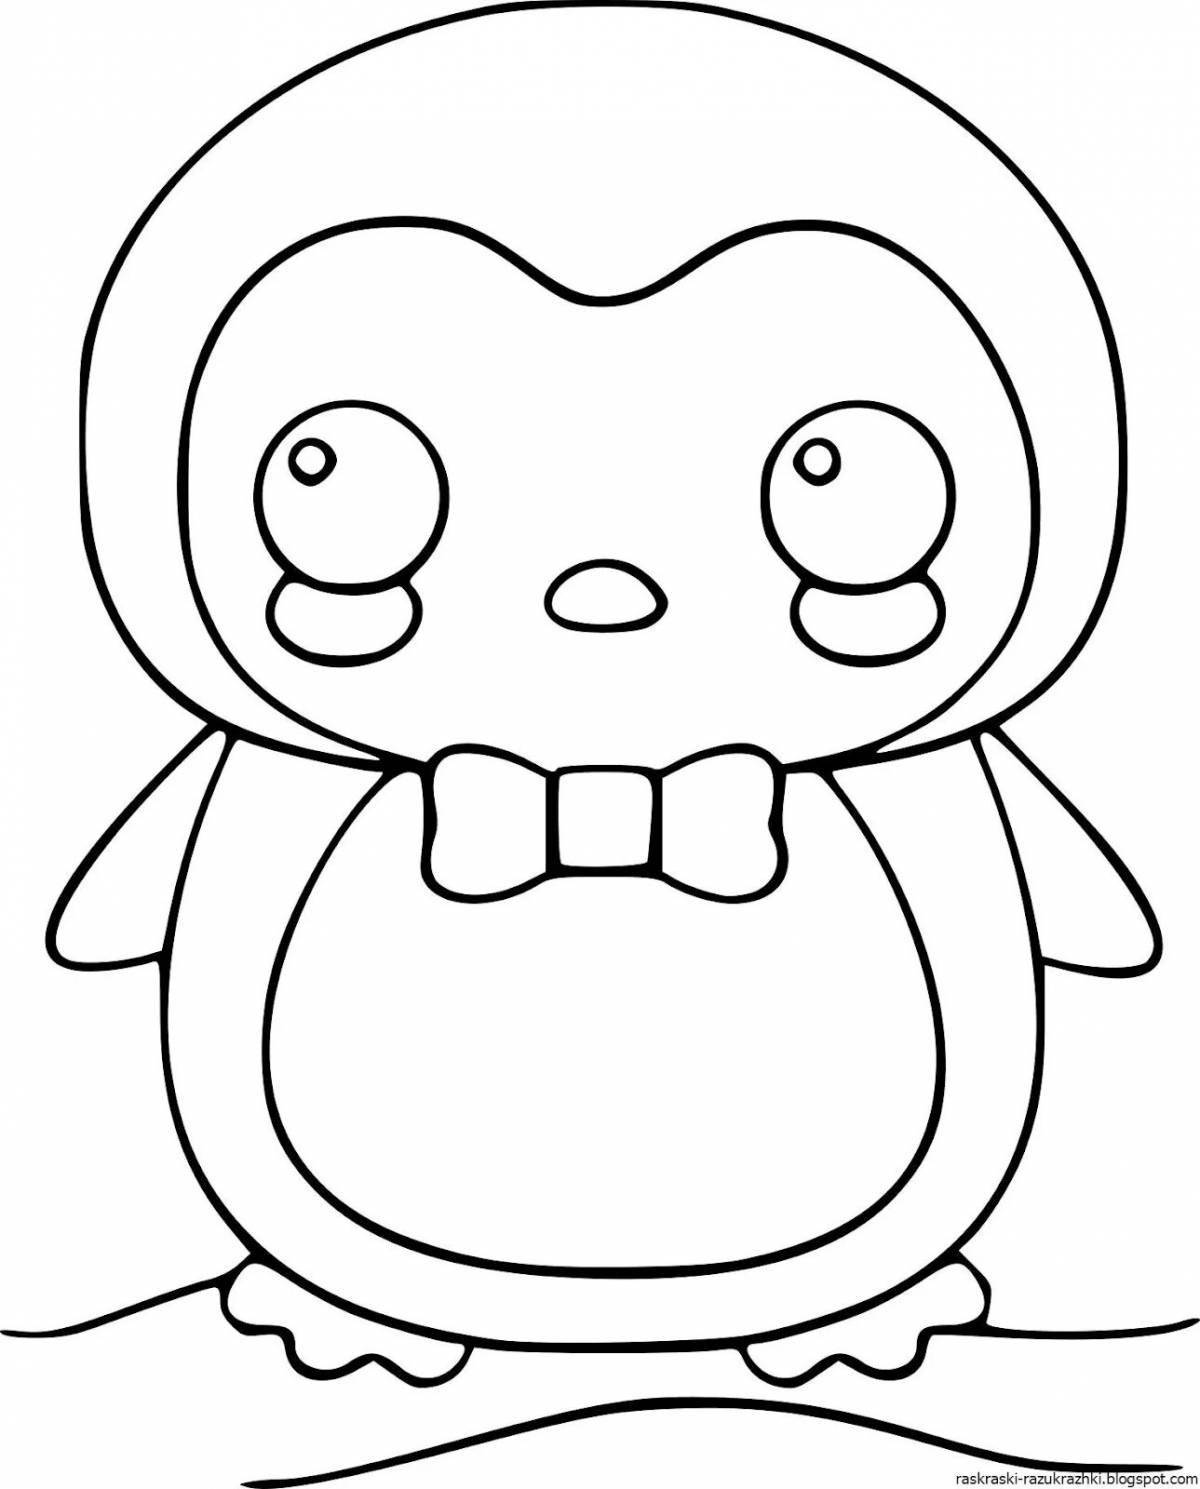 Adorable kawaii frog coloring page